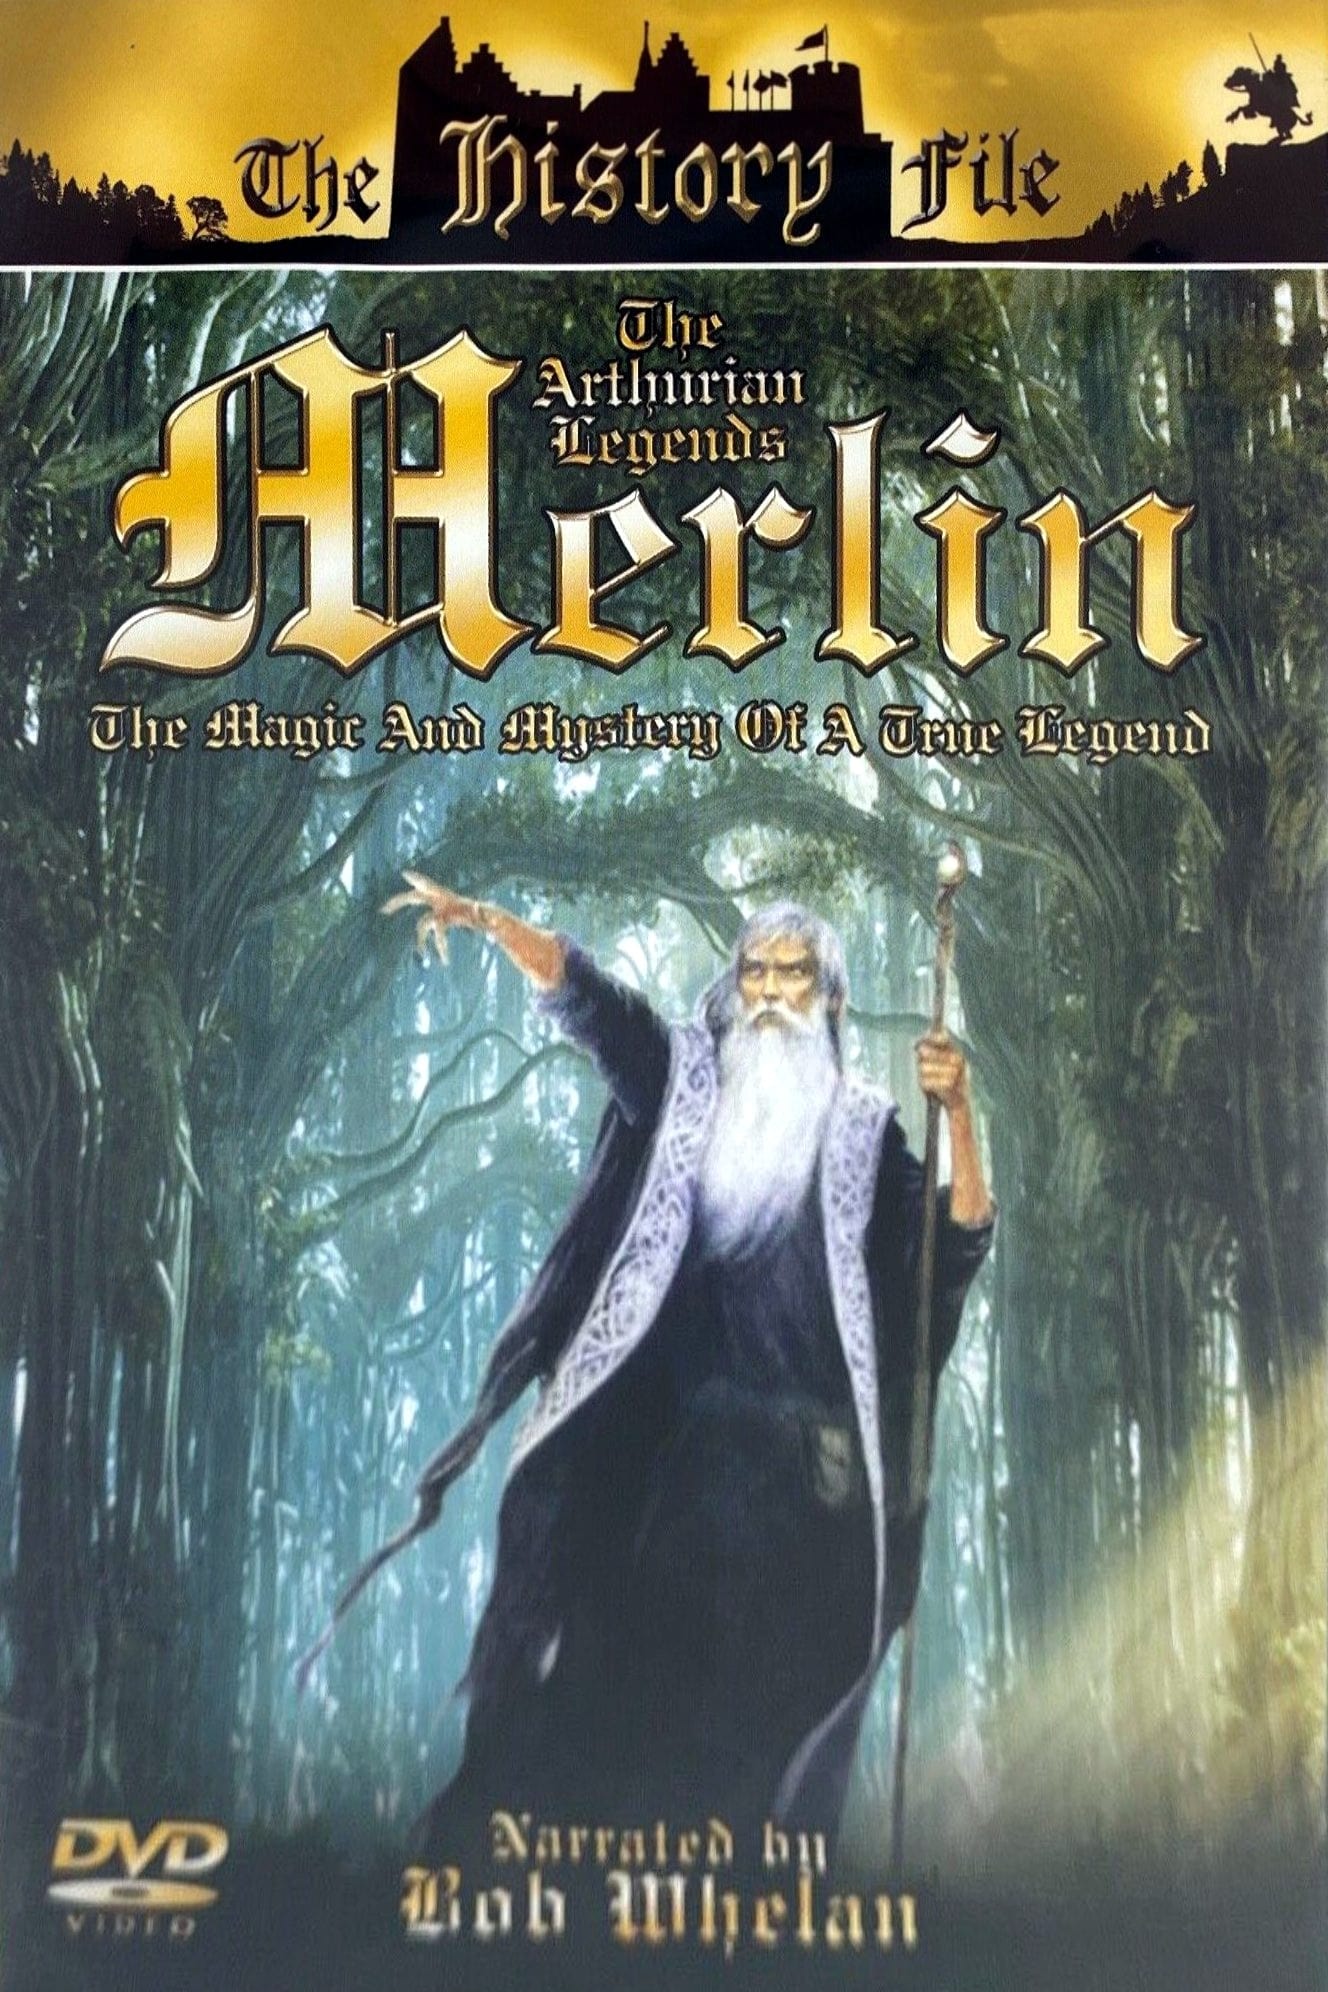 The Arthurian Legends: Merlin